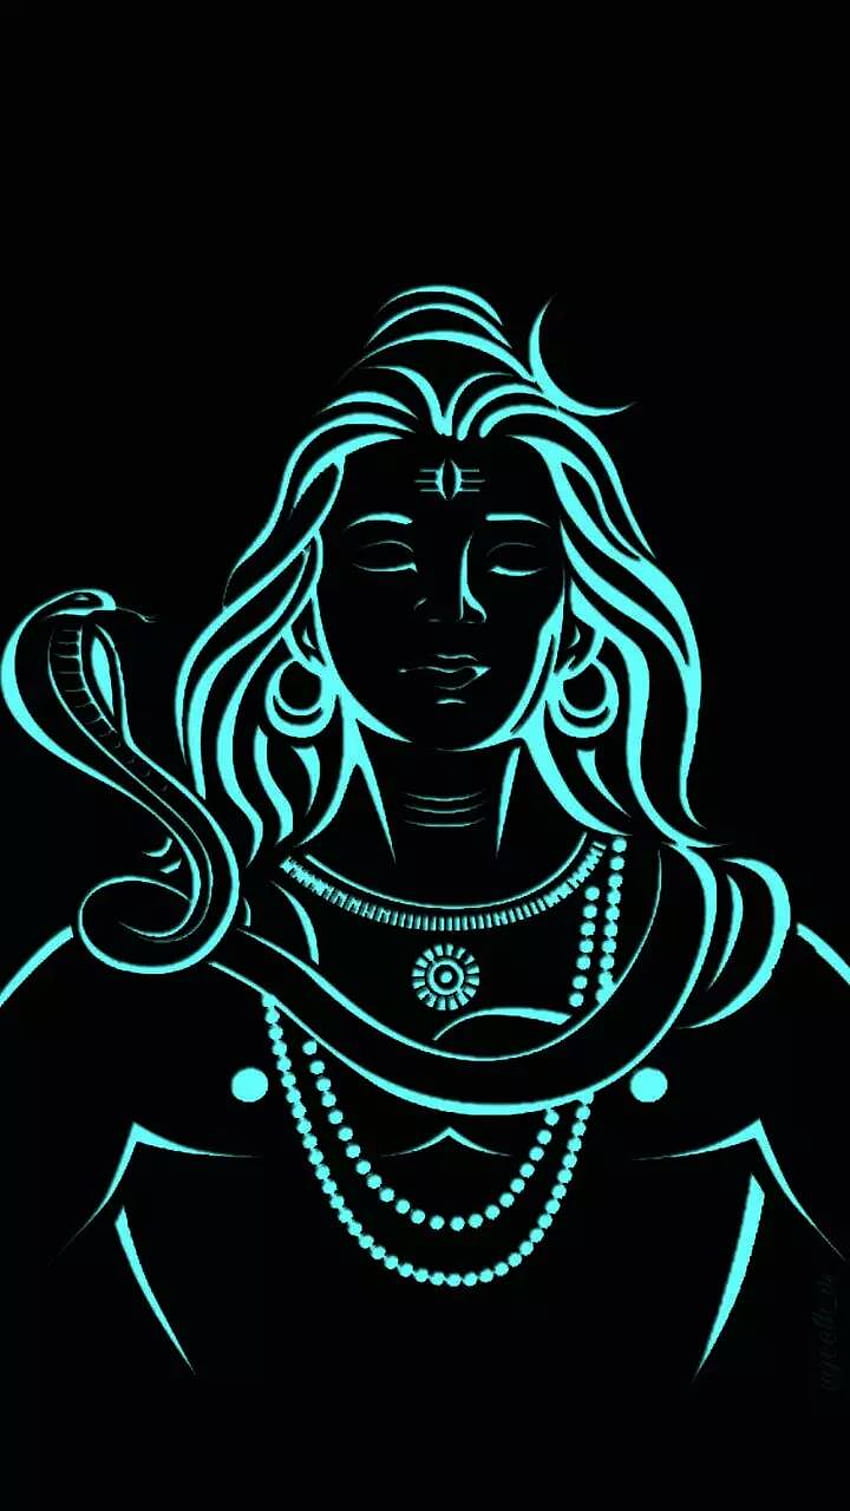 Được tạo nên từ những đường nét rõ ràng và màu sắc tối giản, hình nền Lord Shiva Dark Wallpaper sẽ mang lại cho bạn cảm giác thanh lịch và tao nhã cho điện thoại của bạn. Hãy cùng khám phá sức hút của vẻ đẹp đầy quyến rũ này nhé.